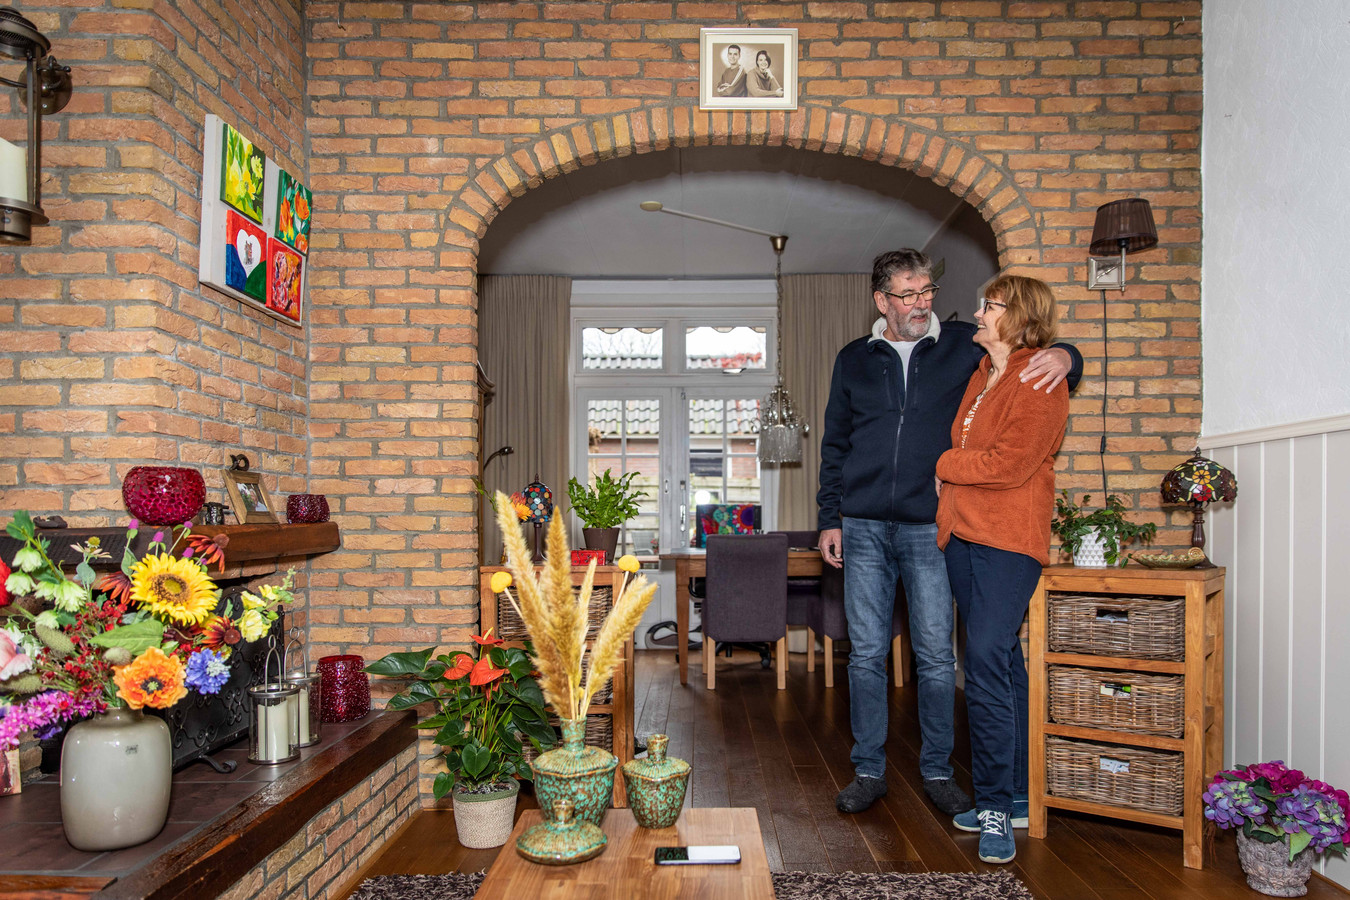 Broer Verhuizer Puur Het huis van Sjaak en Annet staat te koop. 'Het is echt zo'n buurtje waar  je voor elkaar zorgt en lief en leed met elkaar deelt.' | Foto | AD.nl